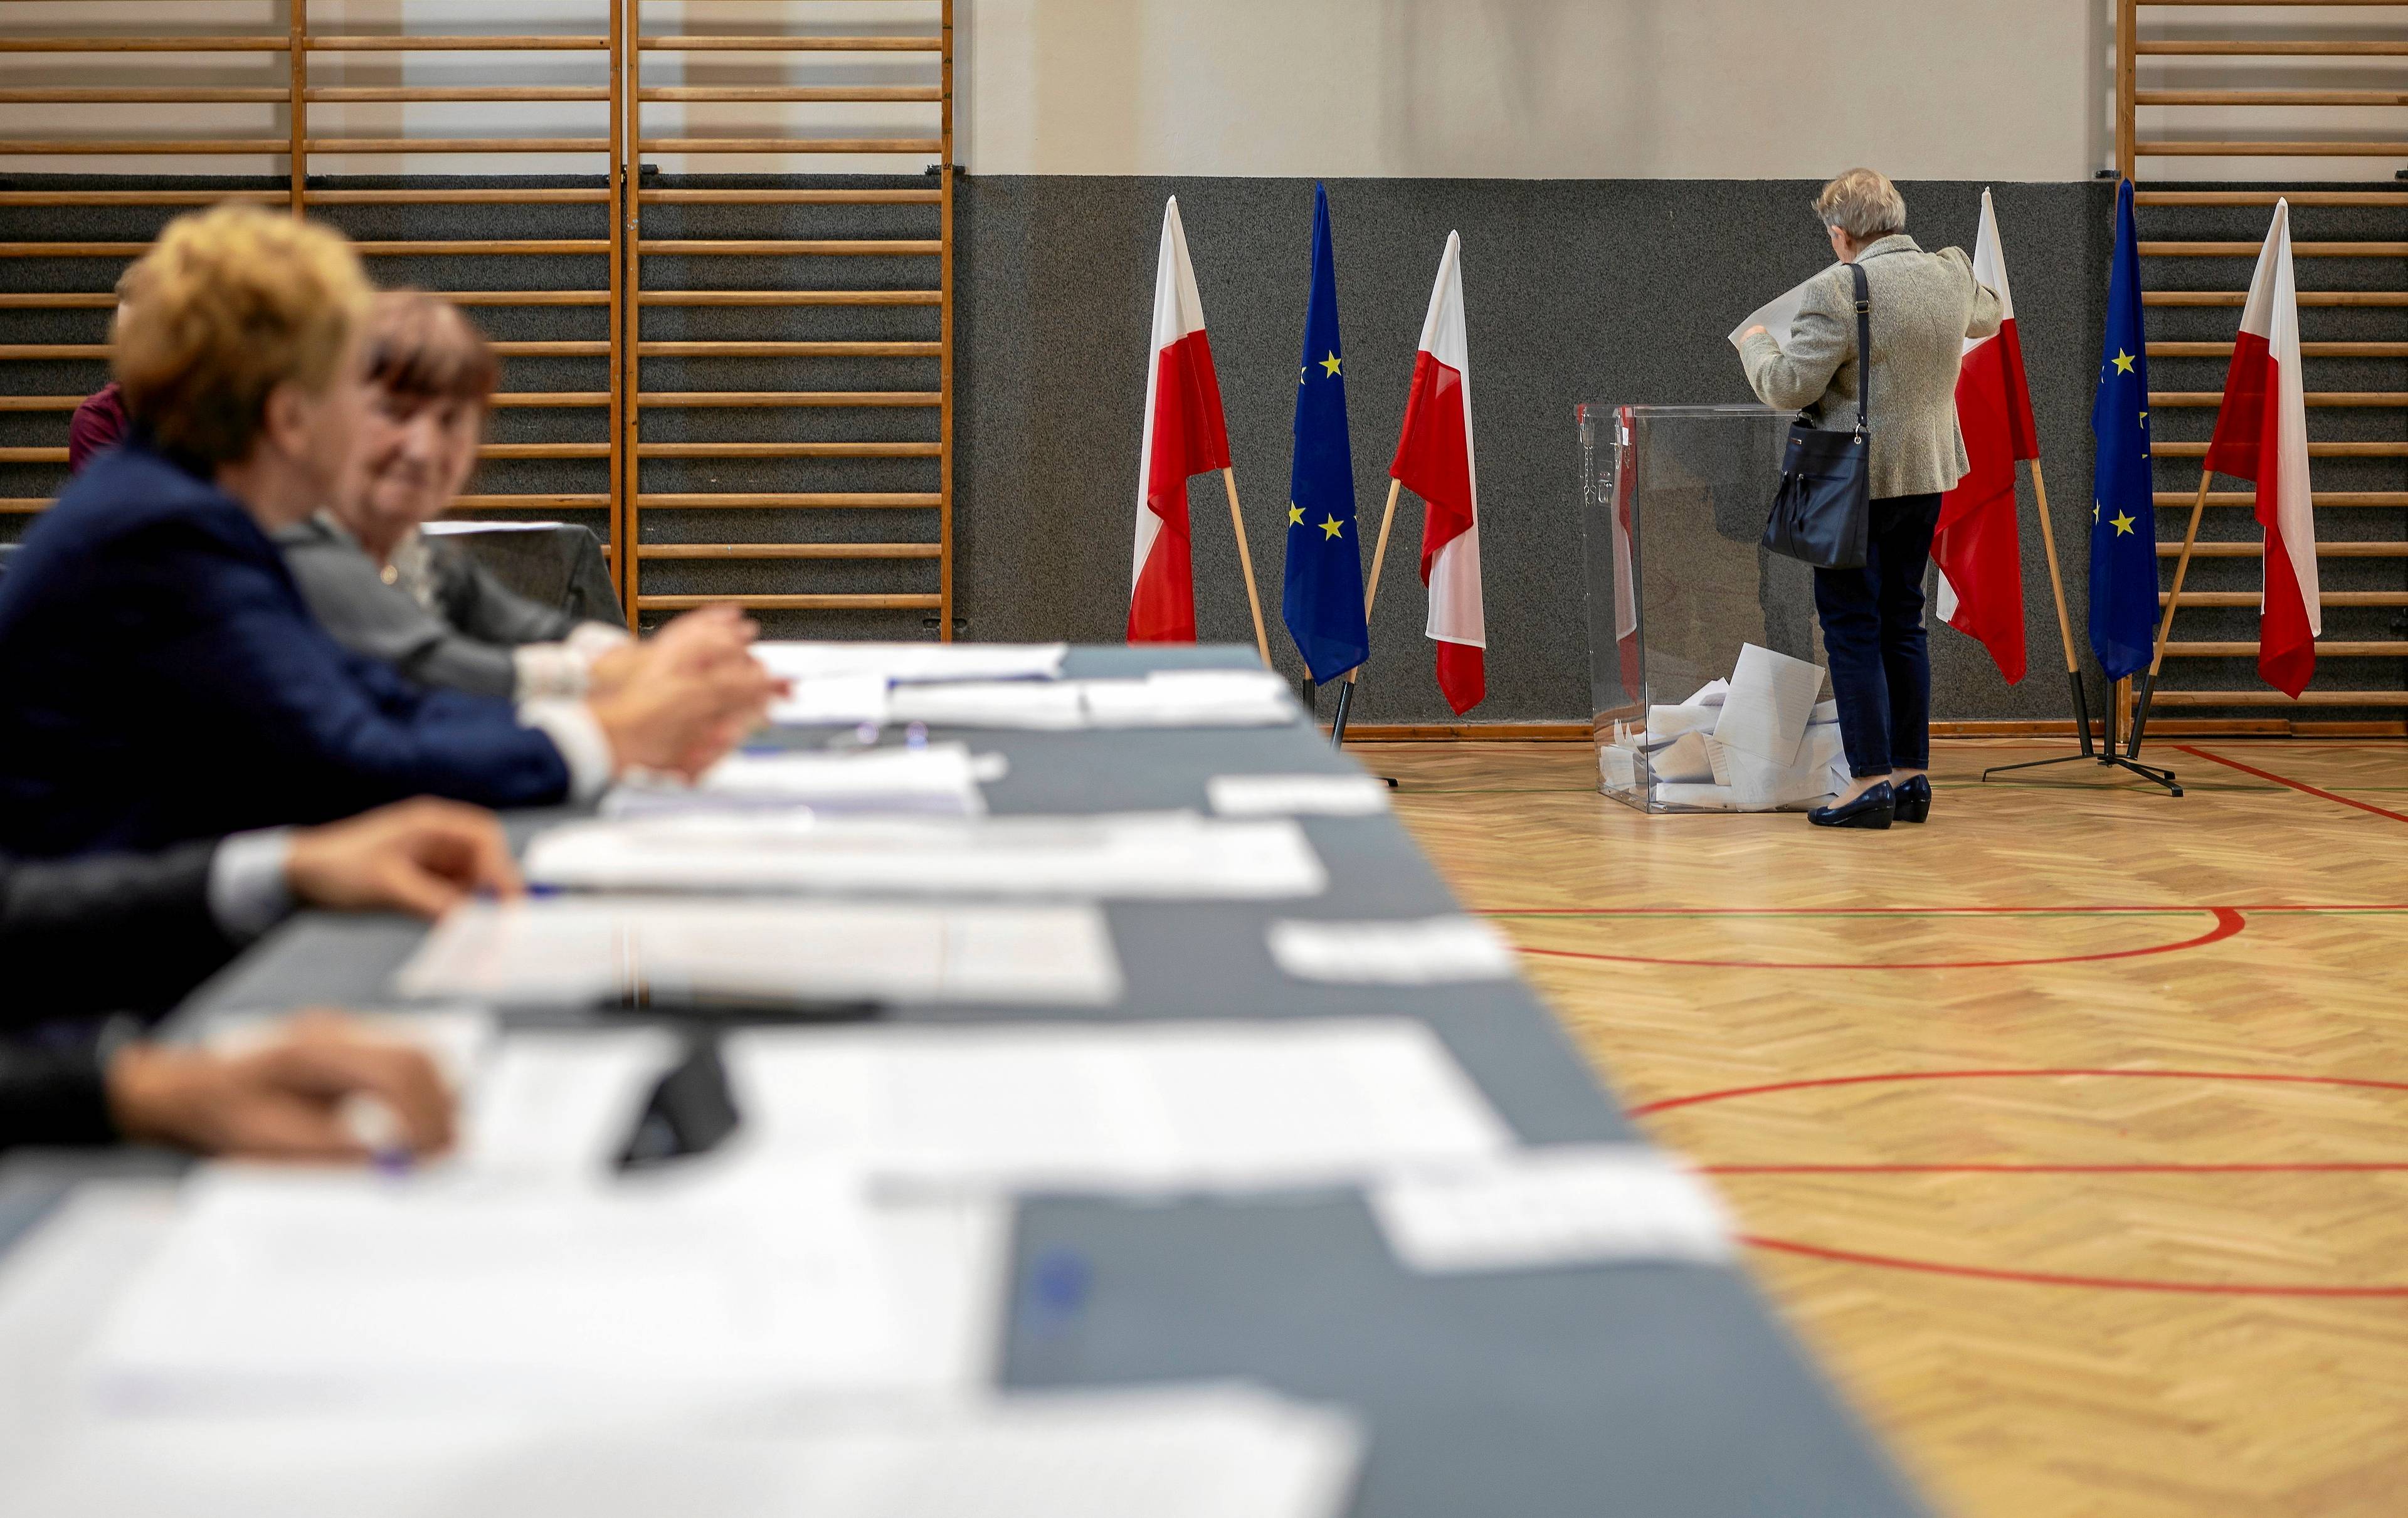 komisja wyborcza, w tle europejska i polska flaga